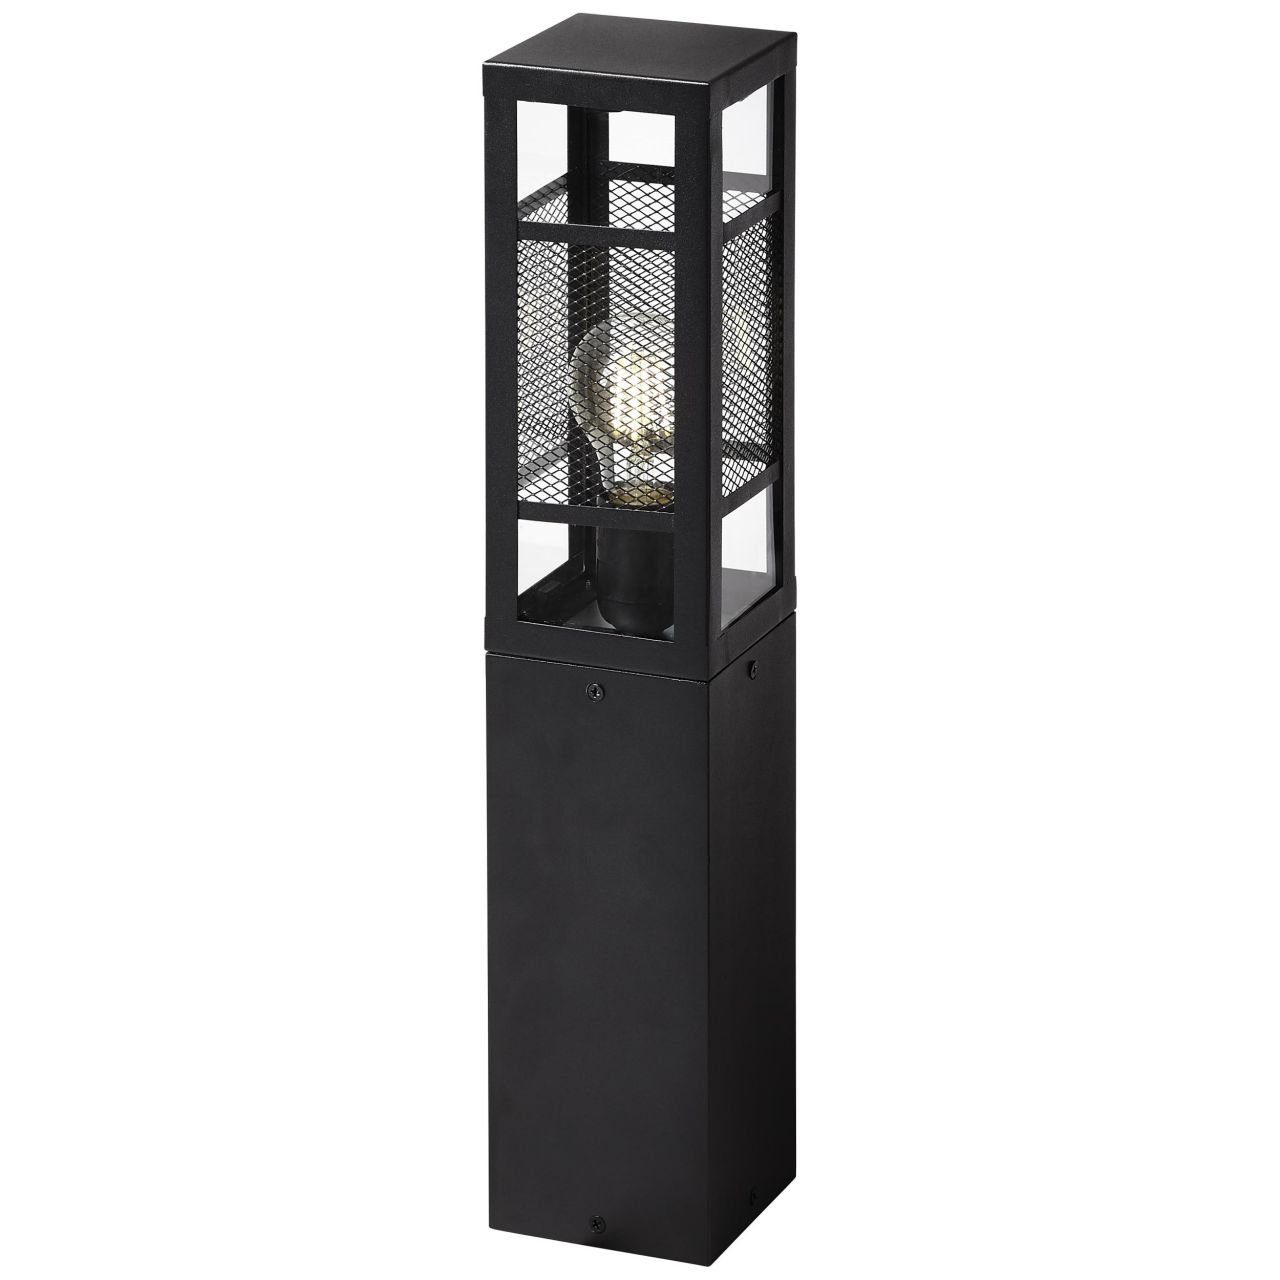 Außen-Stehlampe Getta, schwarz, 50cm 1x Außensockelleuchte Brilliant A6 Lampe, Metall/Kunststoff, Getta